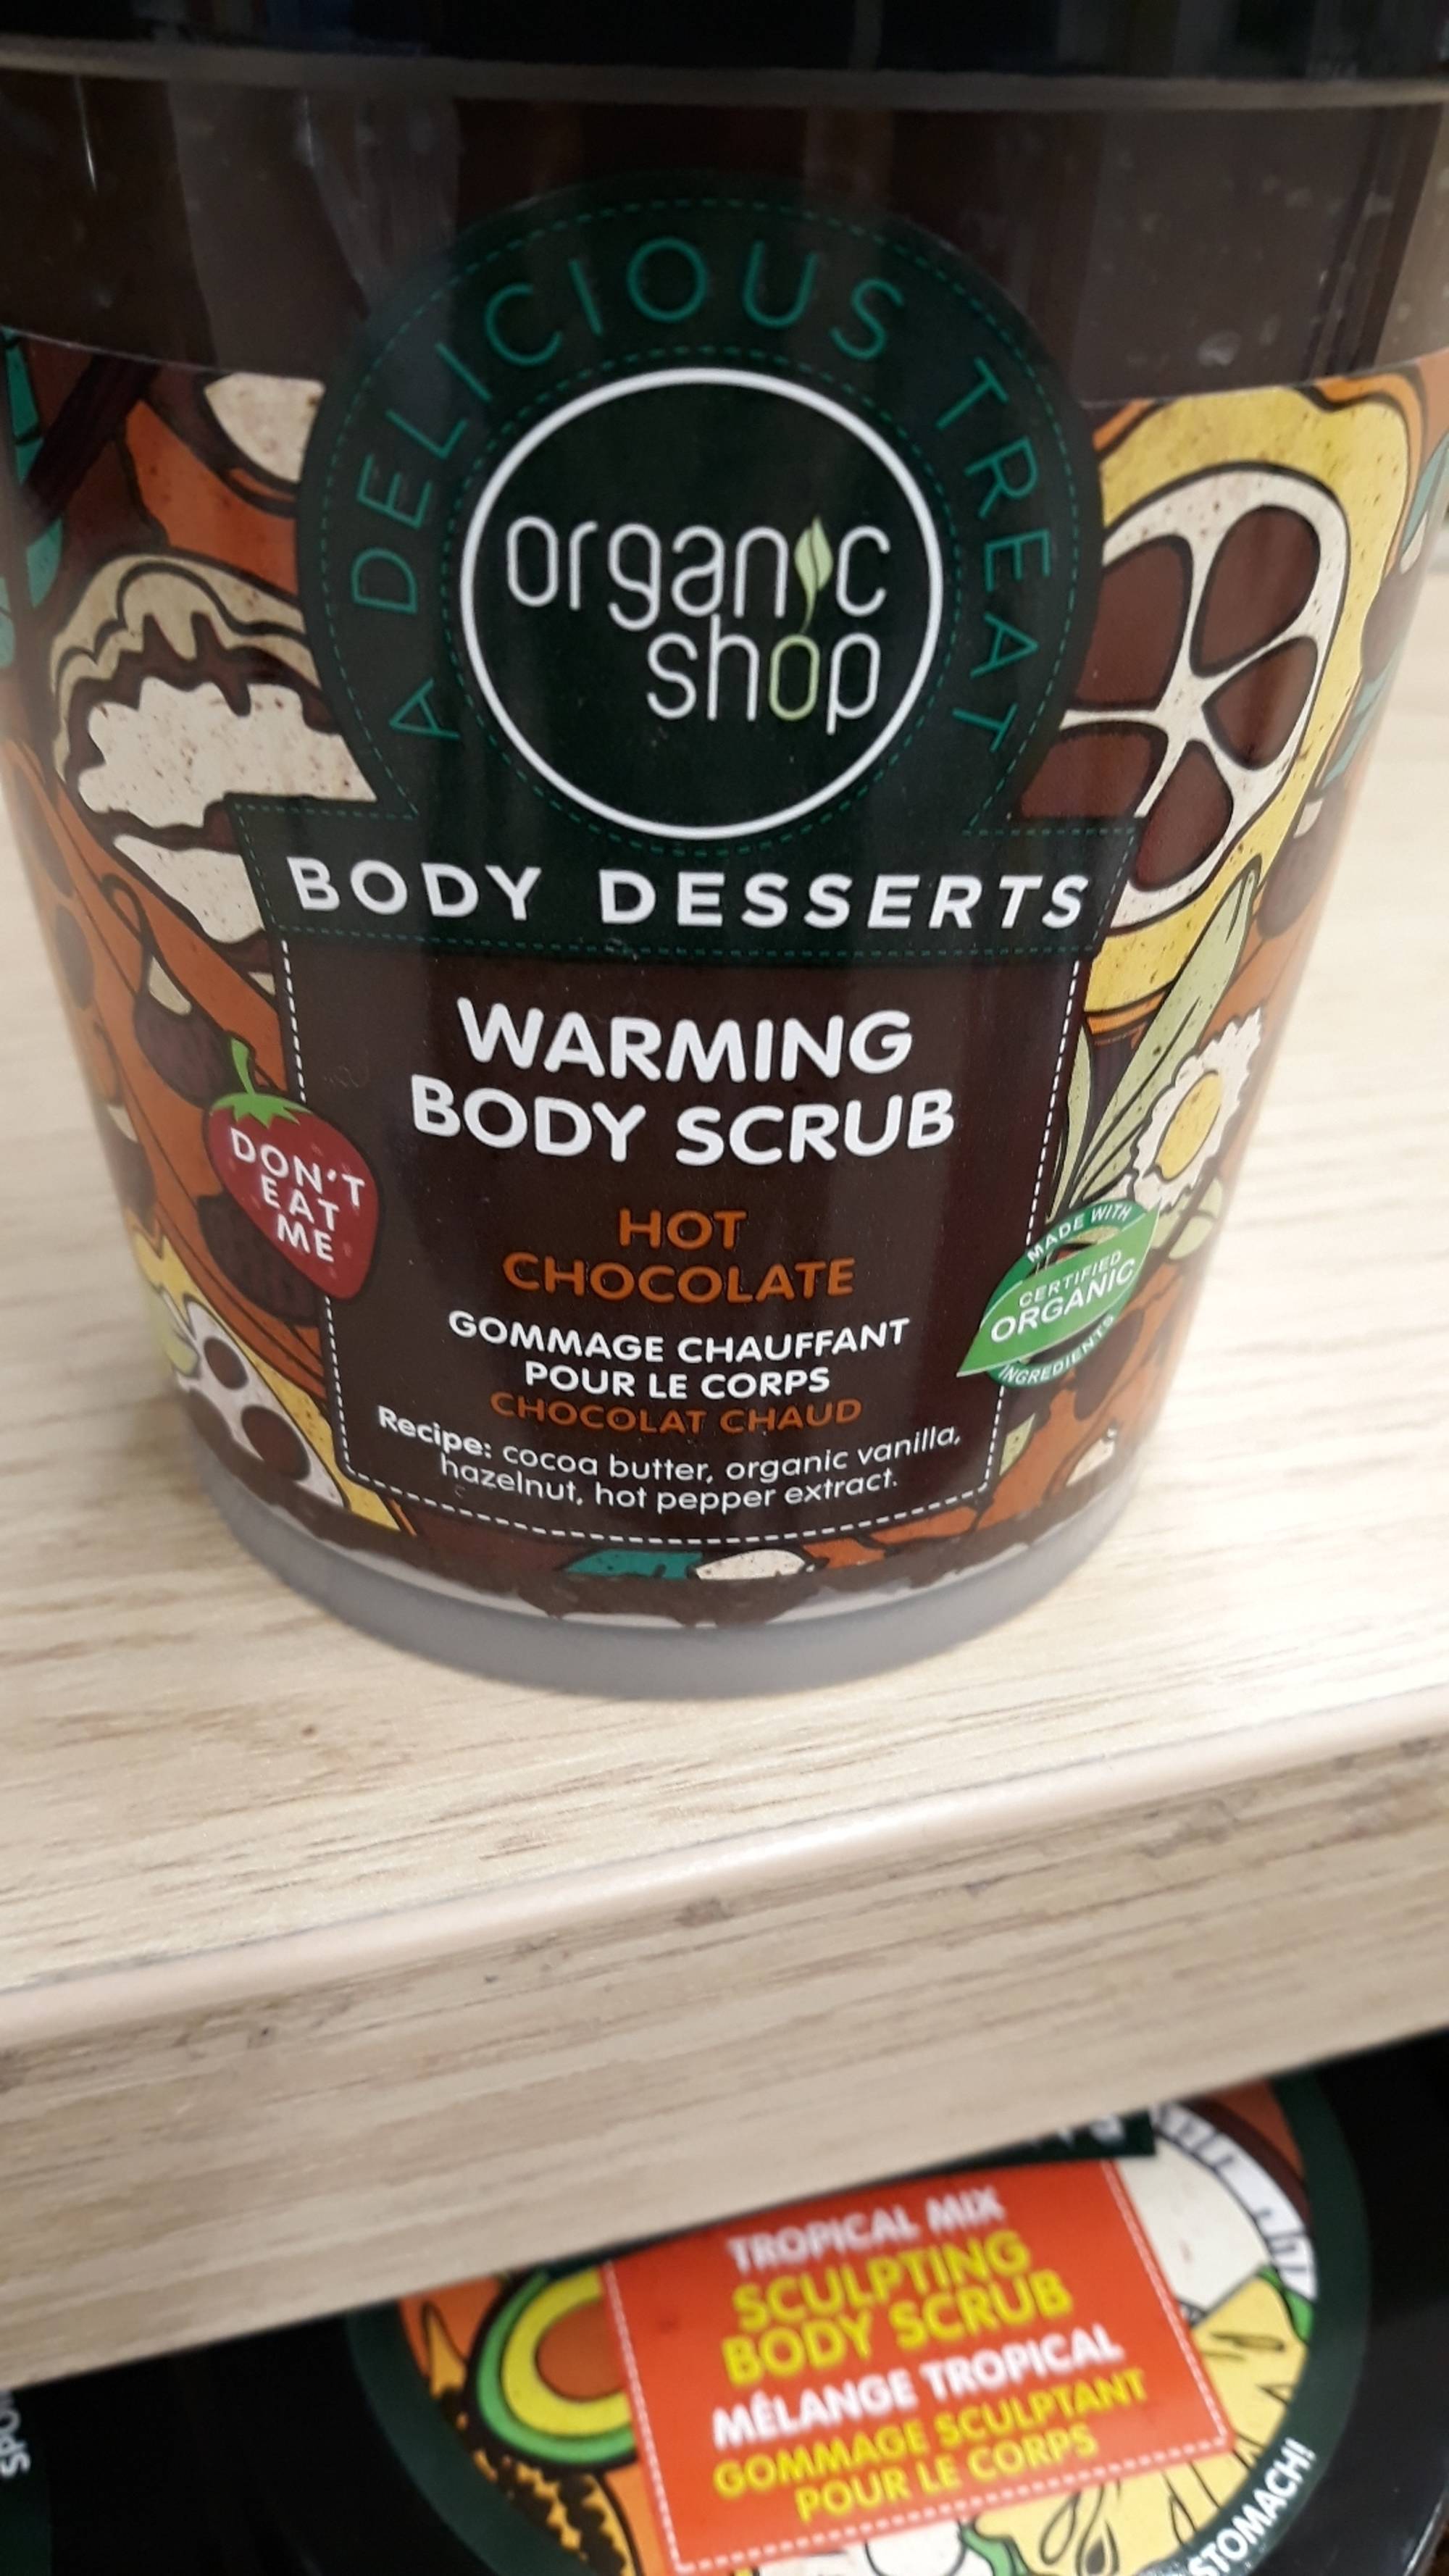 ORGANIC SHOP - Body desserts - Warming body scrub